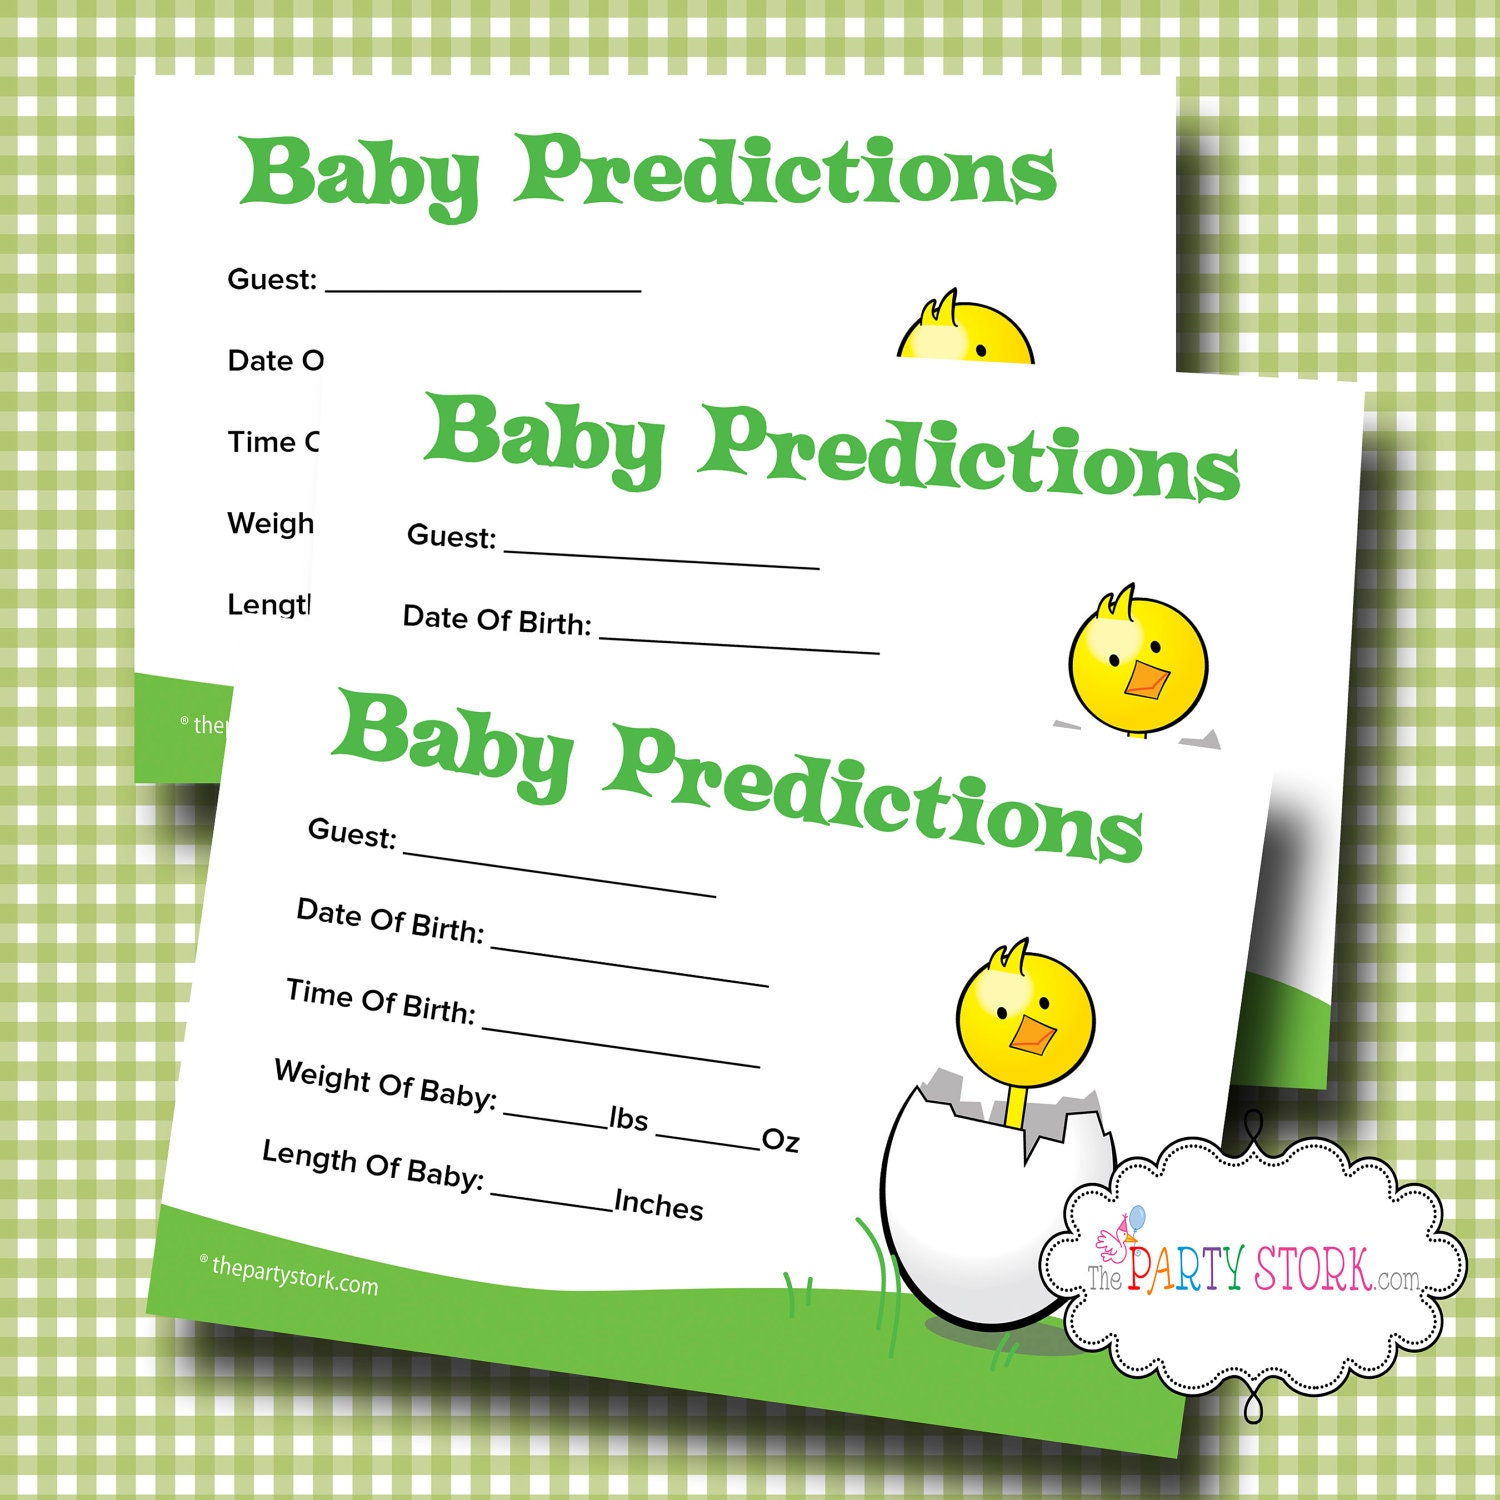 Baby Predictions